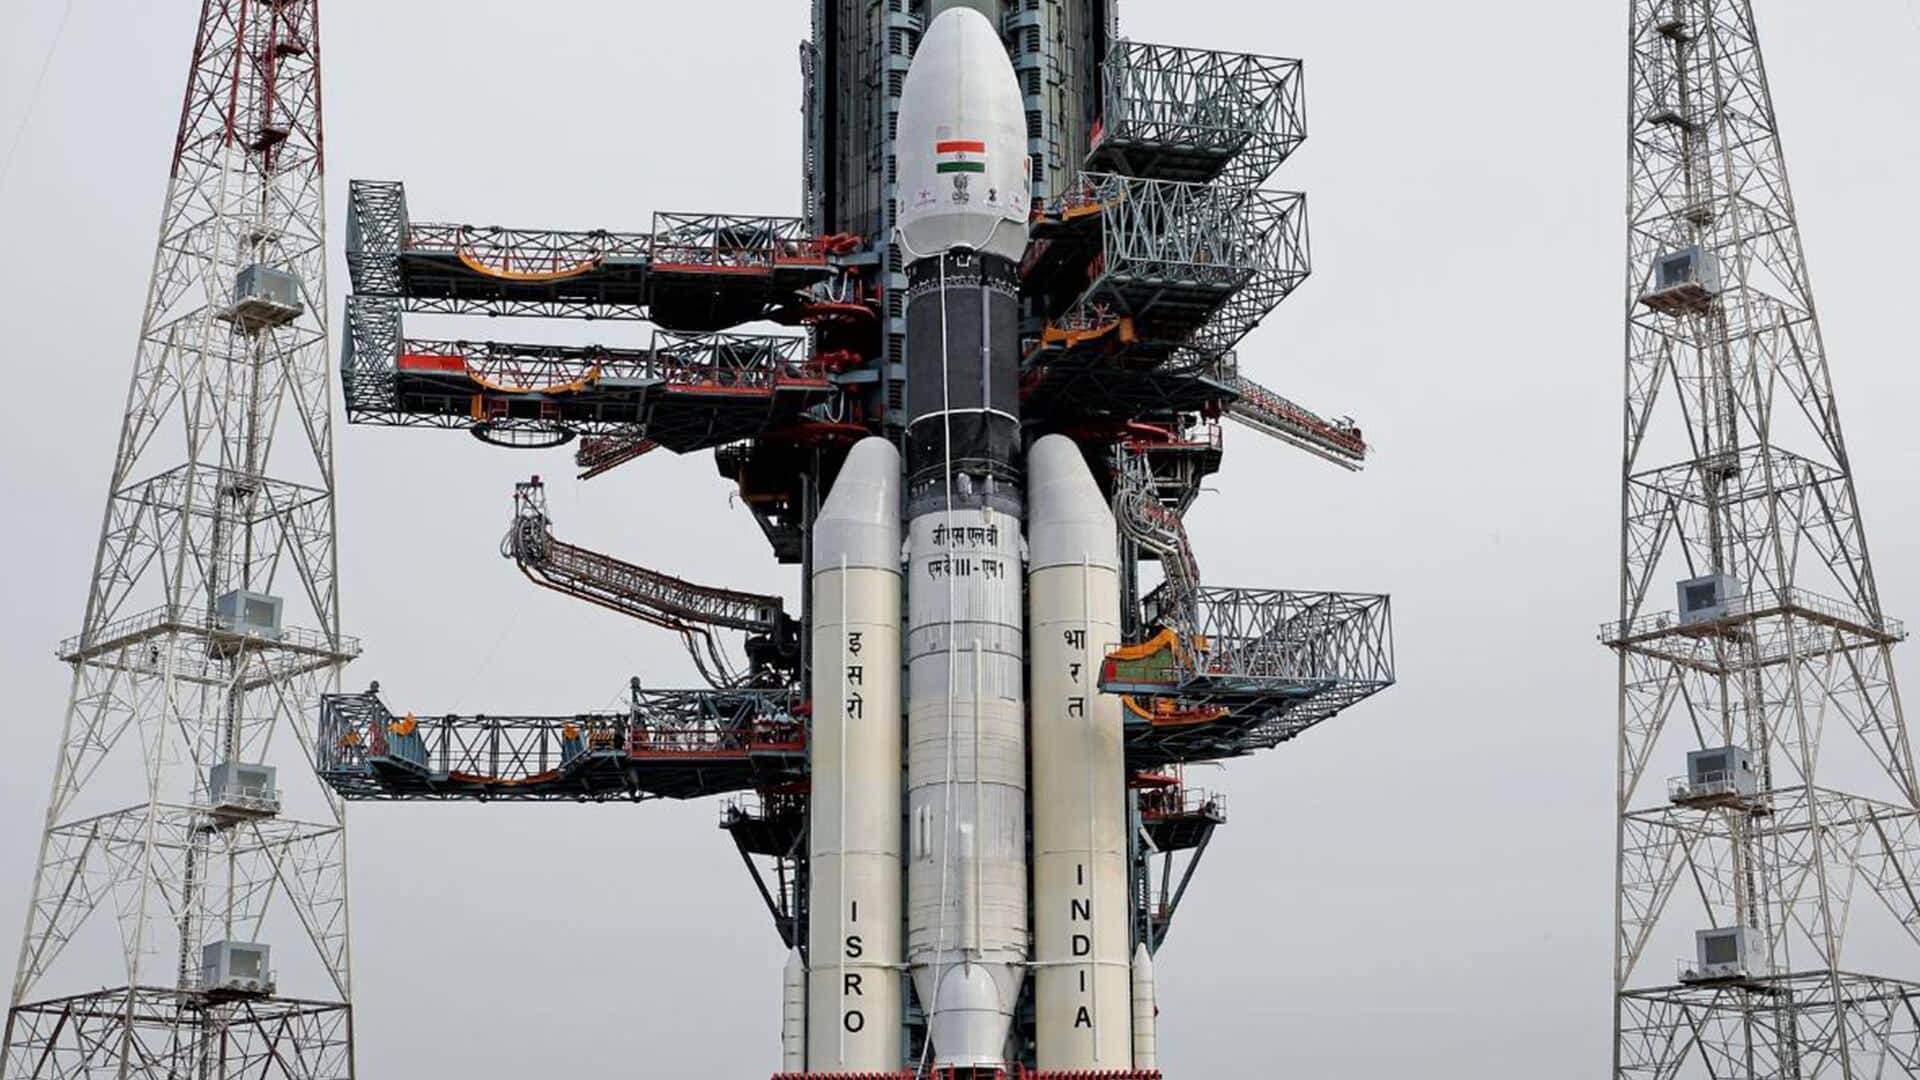 प्रधानमंत्री मोदी समेत तमाम नेताओं ने चंद्रयान-3 के सफल लॉन्च पर दी बधाई, किसने क्या कहा? 